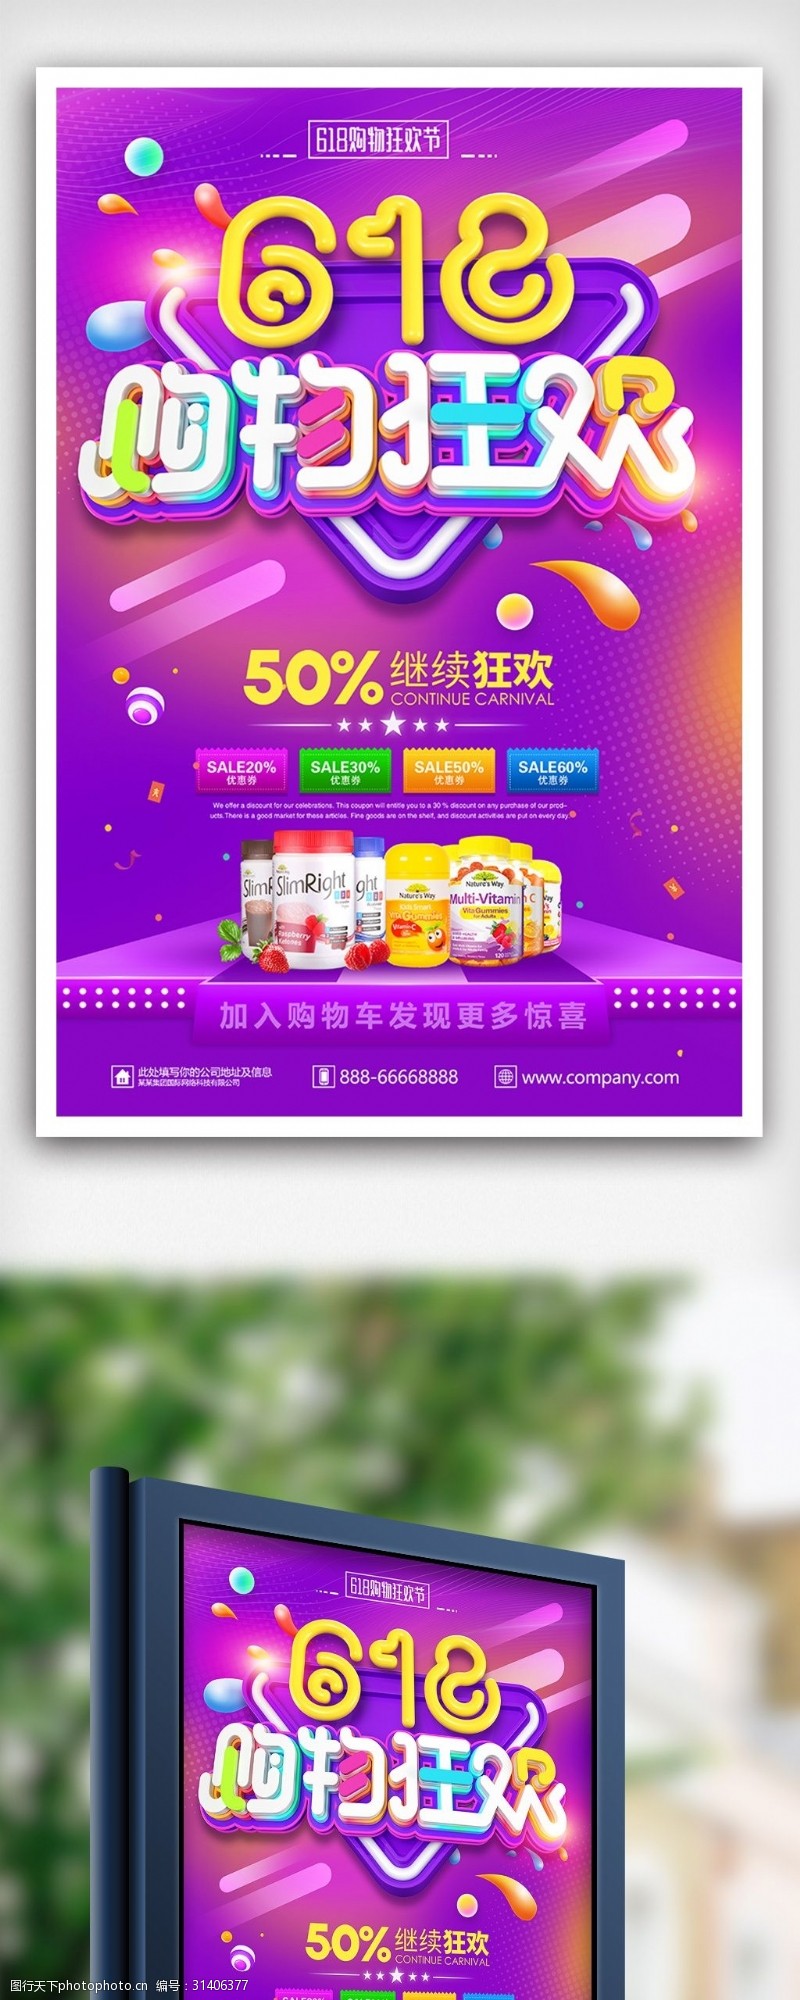 淘宝海报免费下载炫彩时尚618年终购物狂欢节促销海报